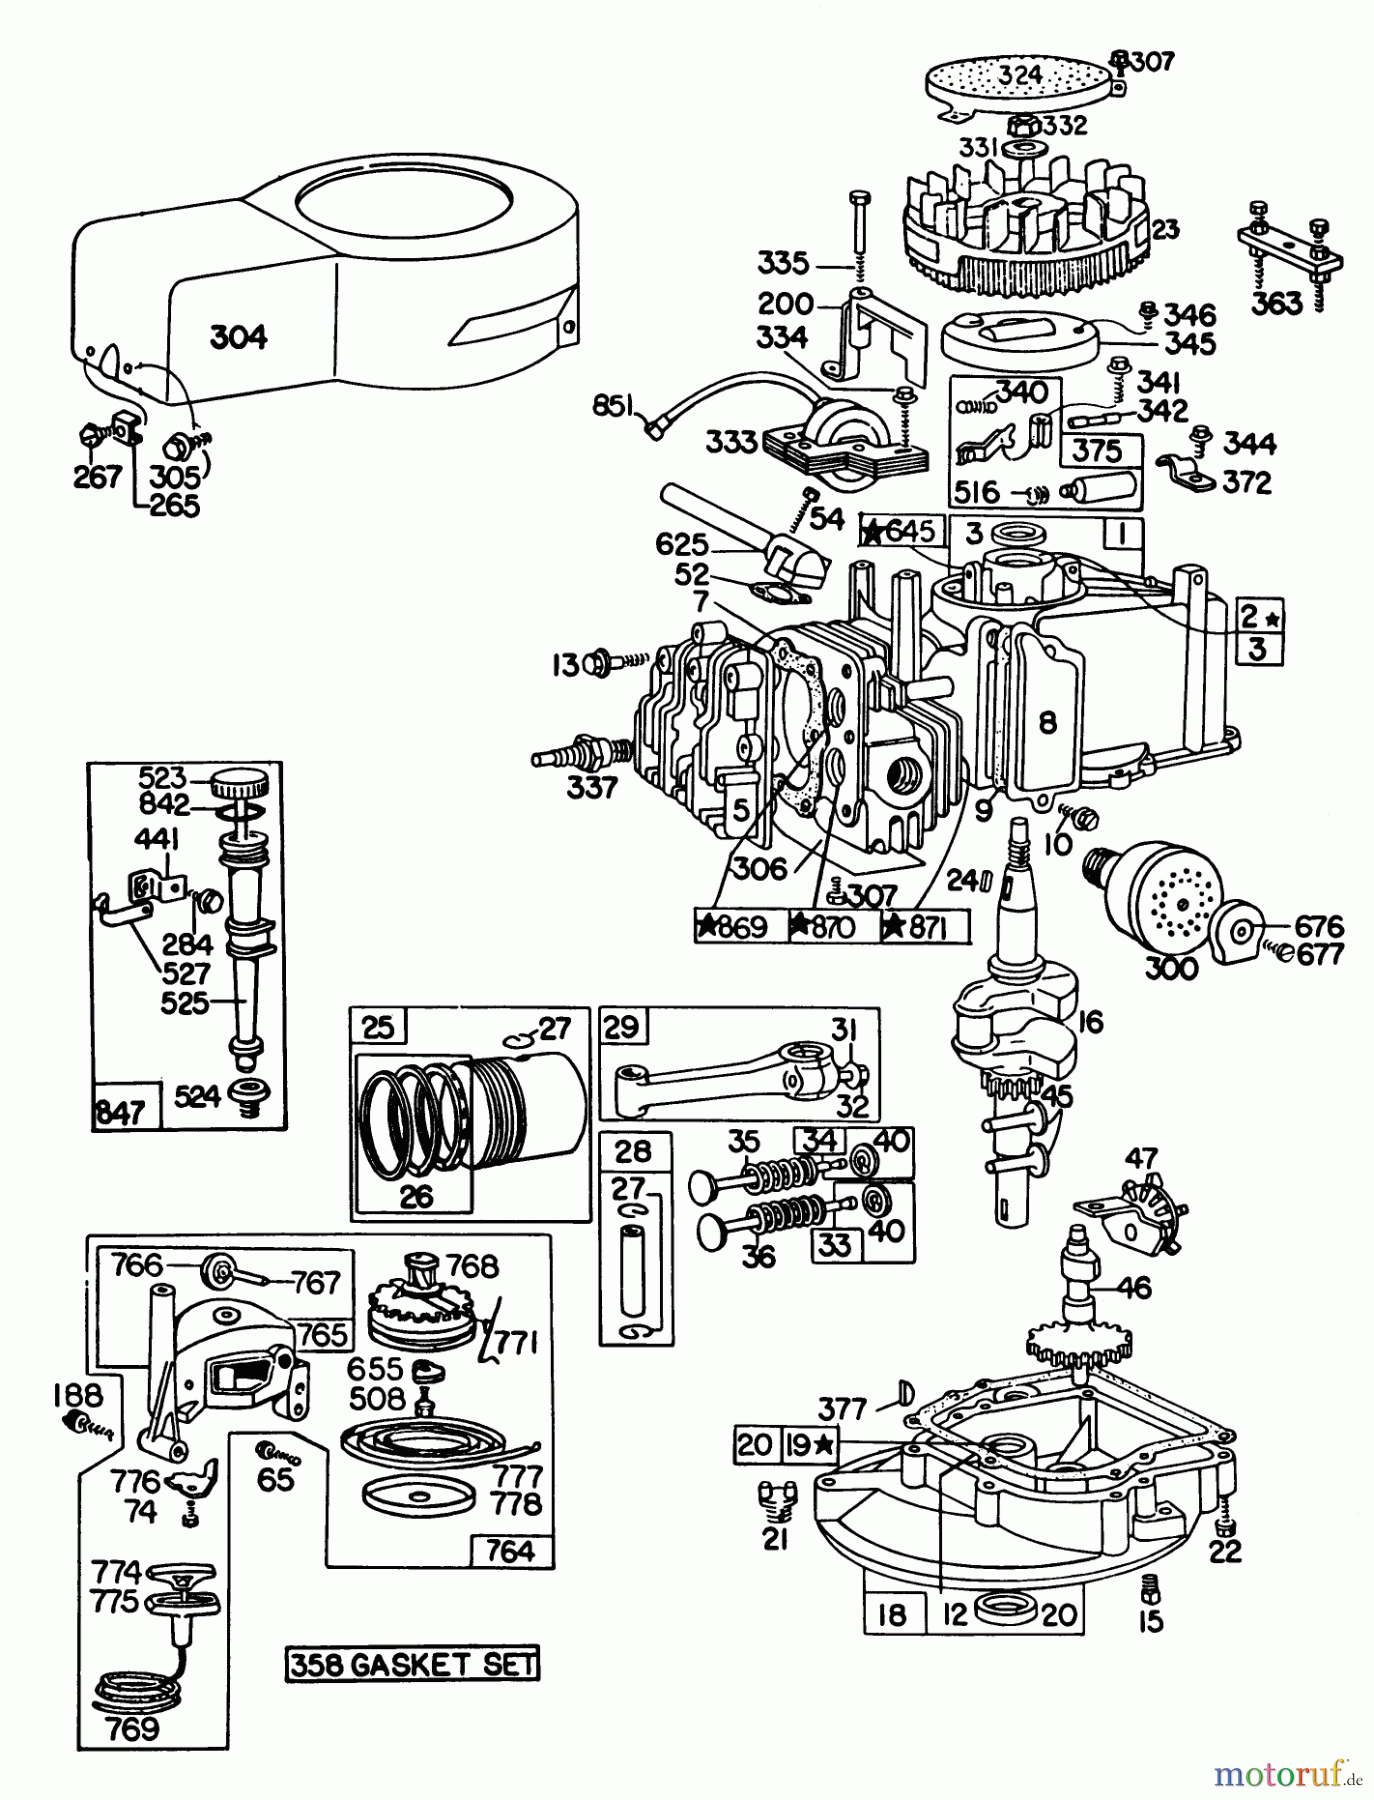  Toro Neu Mowers, Walk-Behind Seite 1 16320 - Toro Lawnmower, 1980 (0000001-0999999) ENGINE BRIGGS & STRATTON MODEL 92908-2052-01 #2